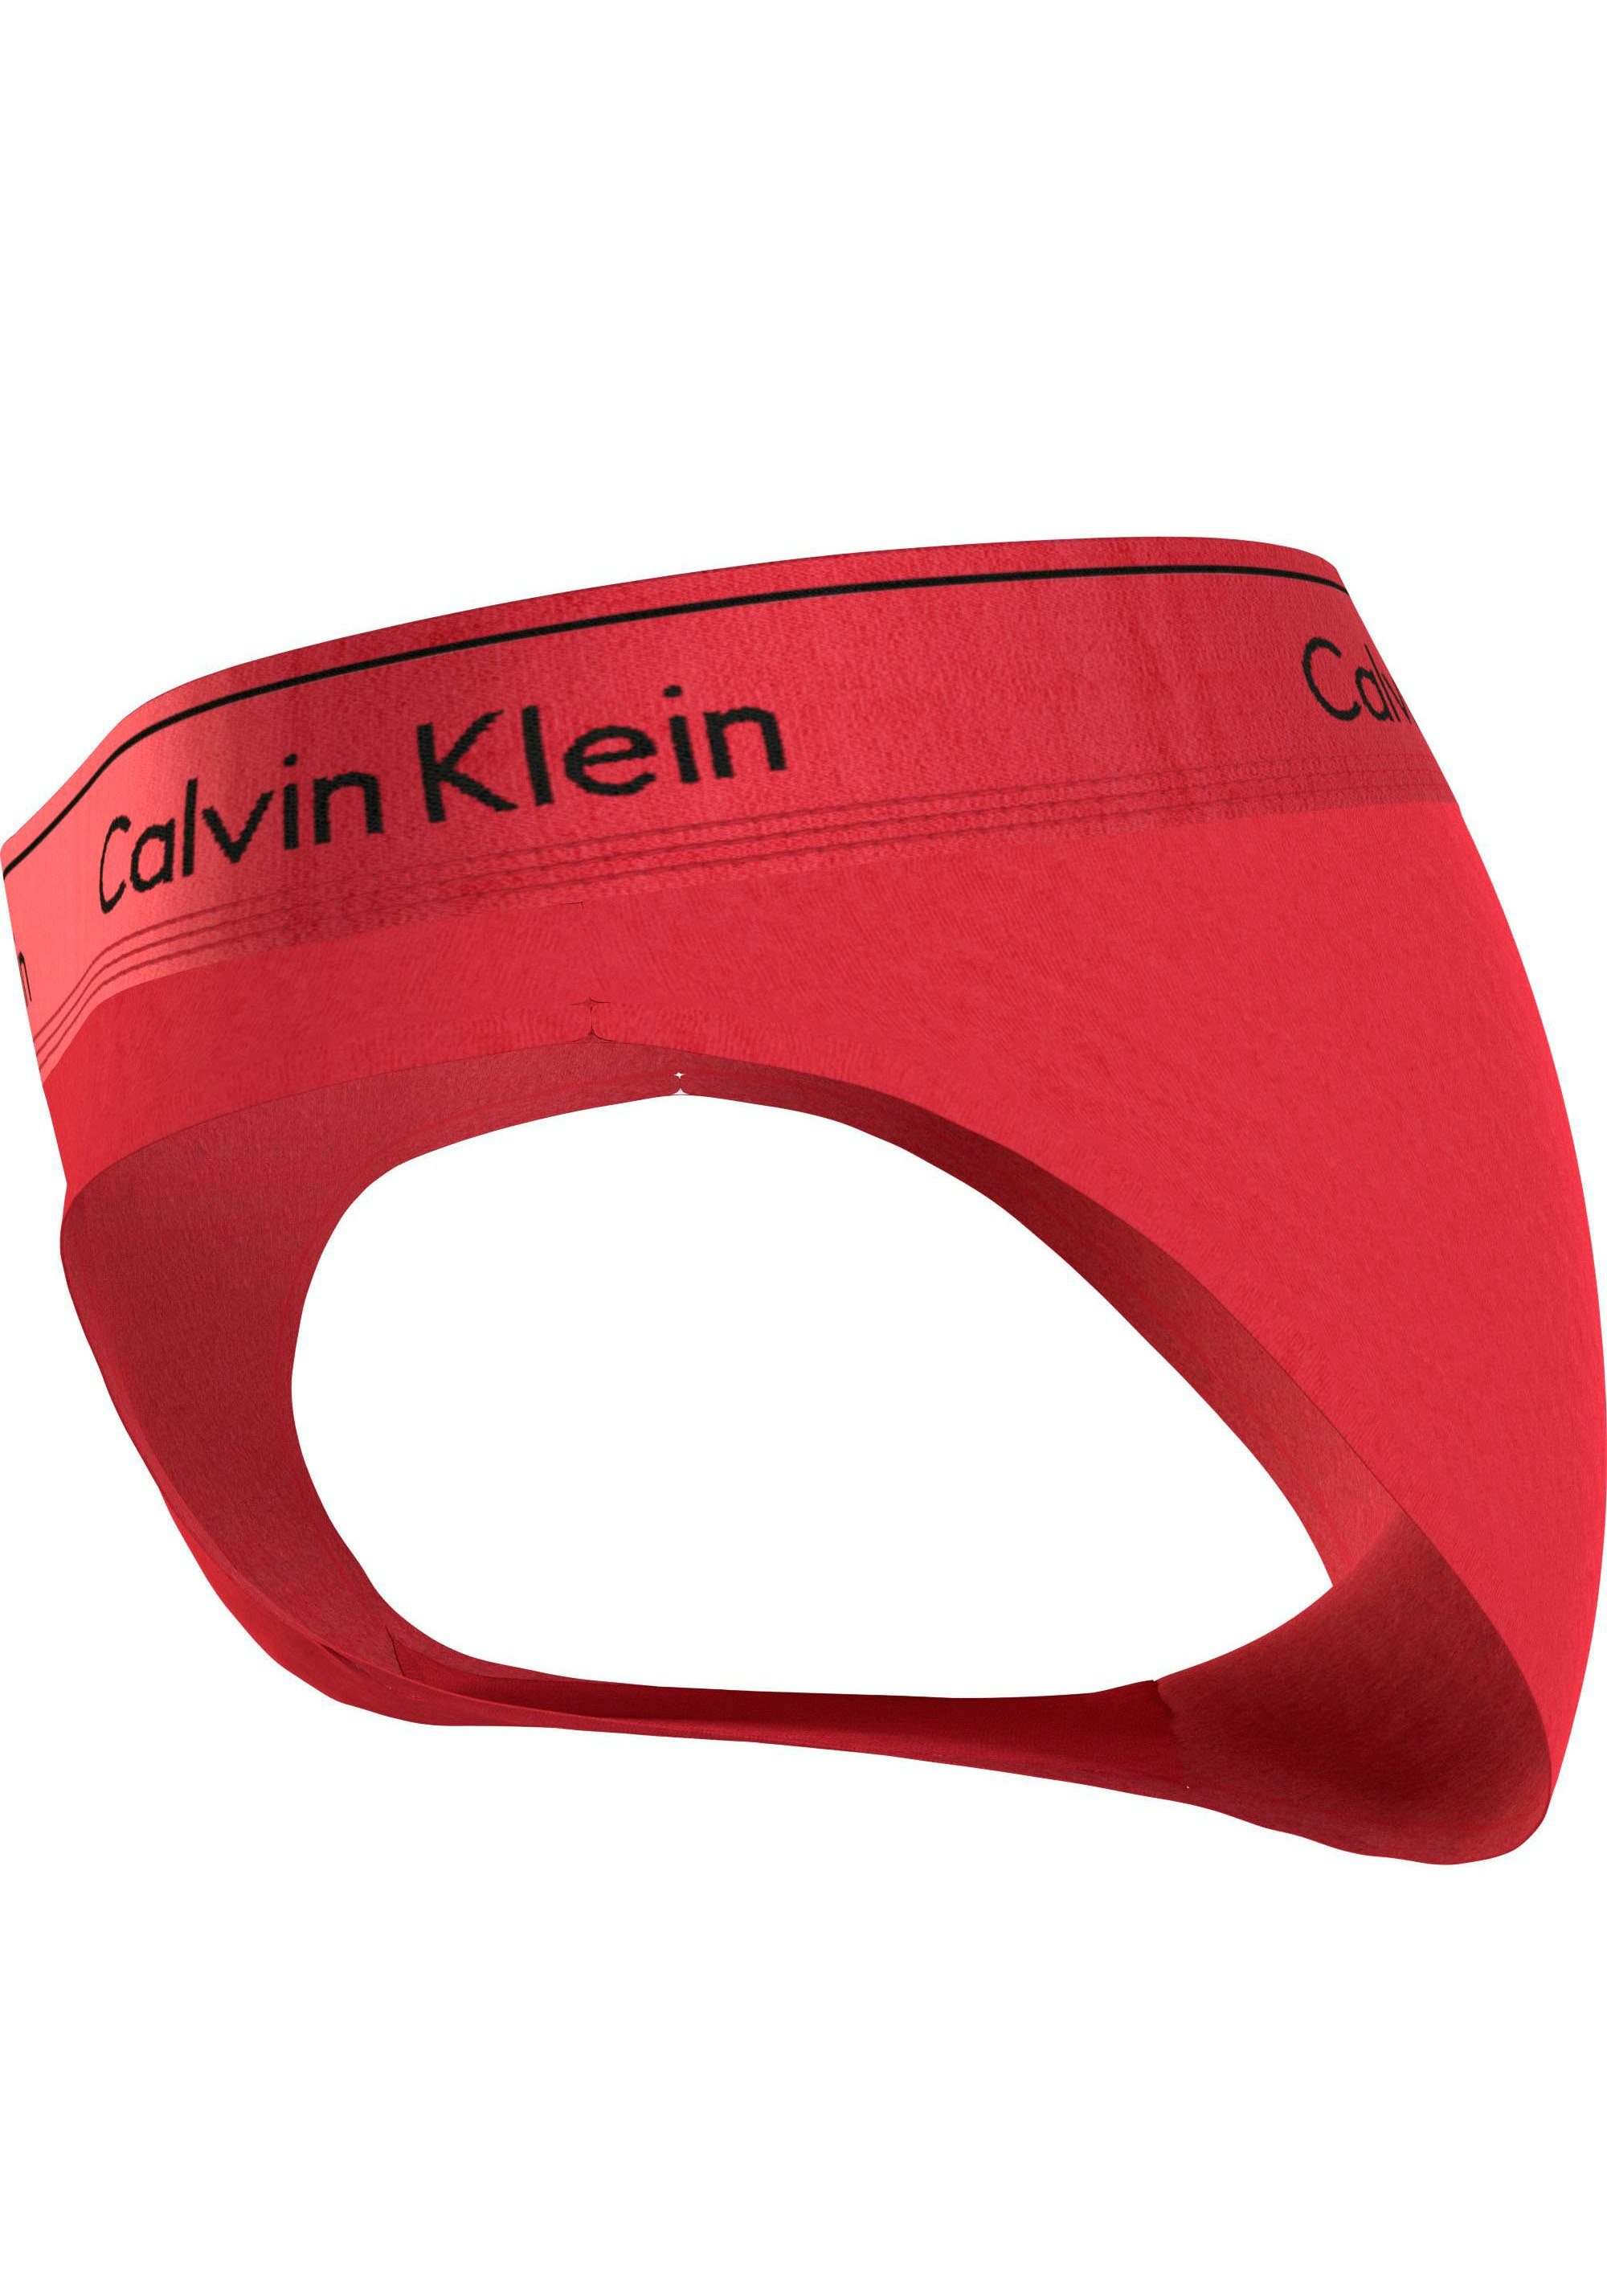 BIKINI Calvin mit CK-Logoschriftzug Klein Bikinislip Underwear